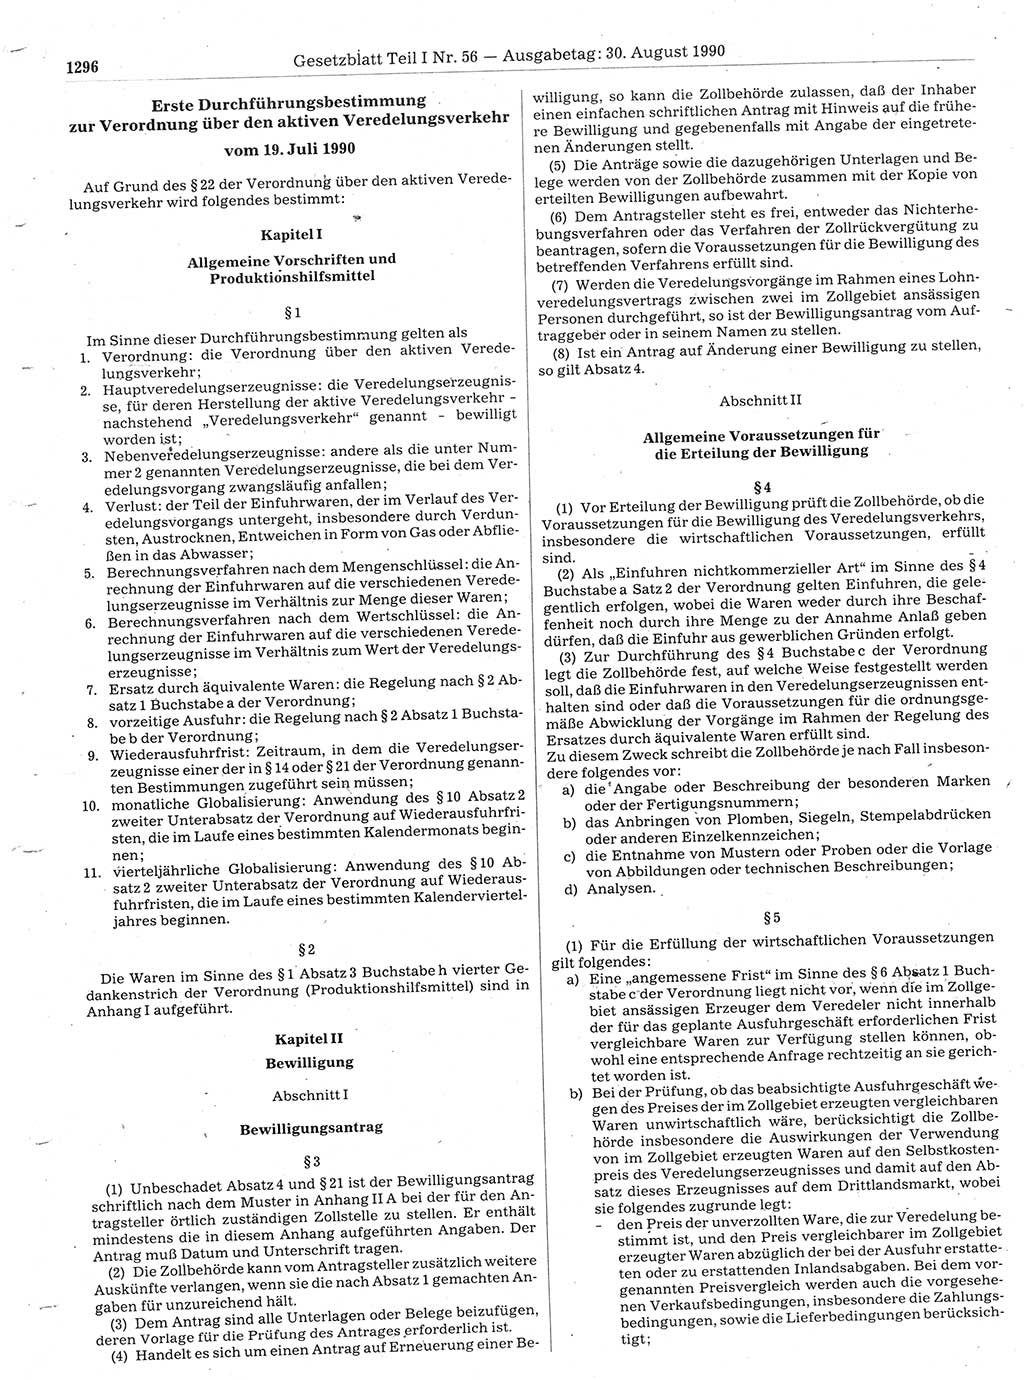 Gesetzblatt (GBl.) der Deutschen Demokratischen Republik (DDR) Teil Ⅰ 1990, Seite 1296 (GBl. DDR Ⅰ 1990, S. 1296)